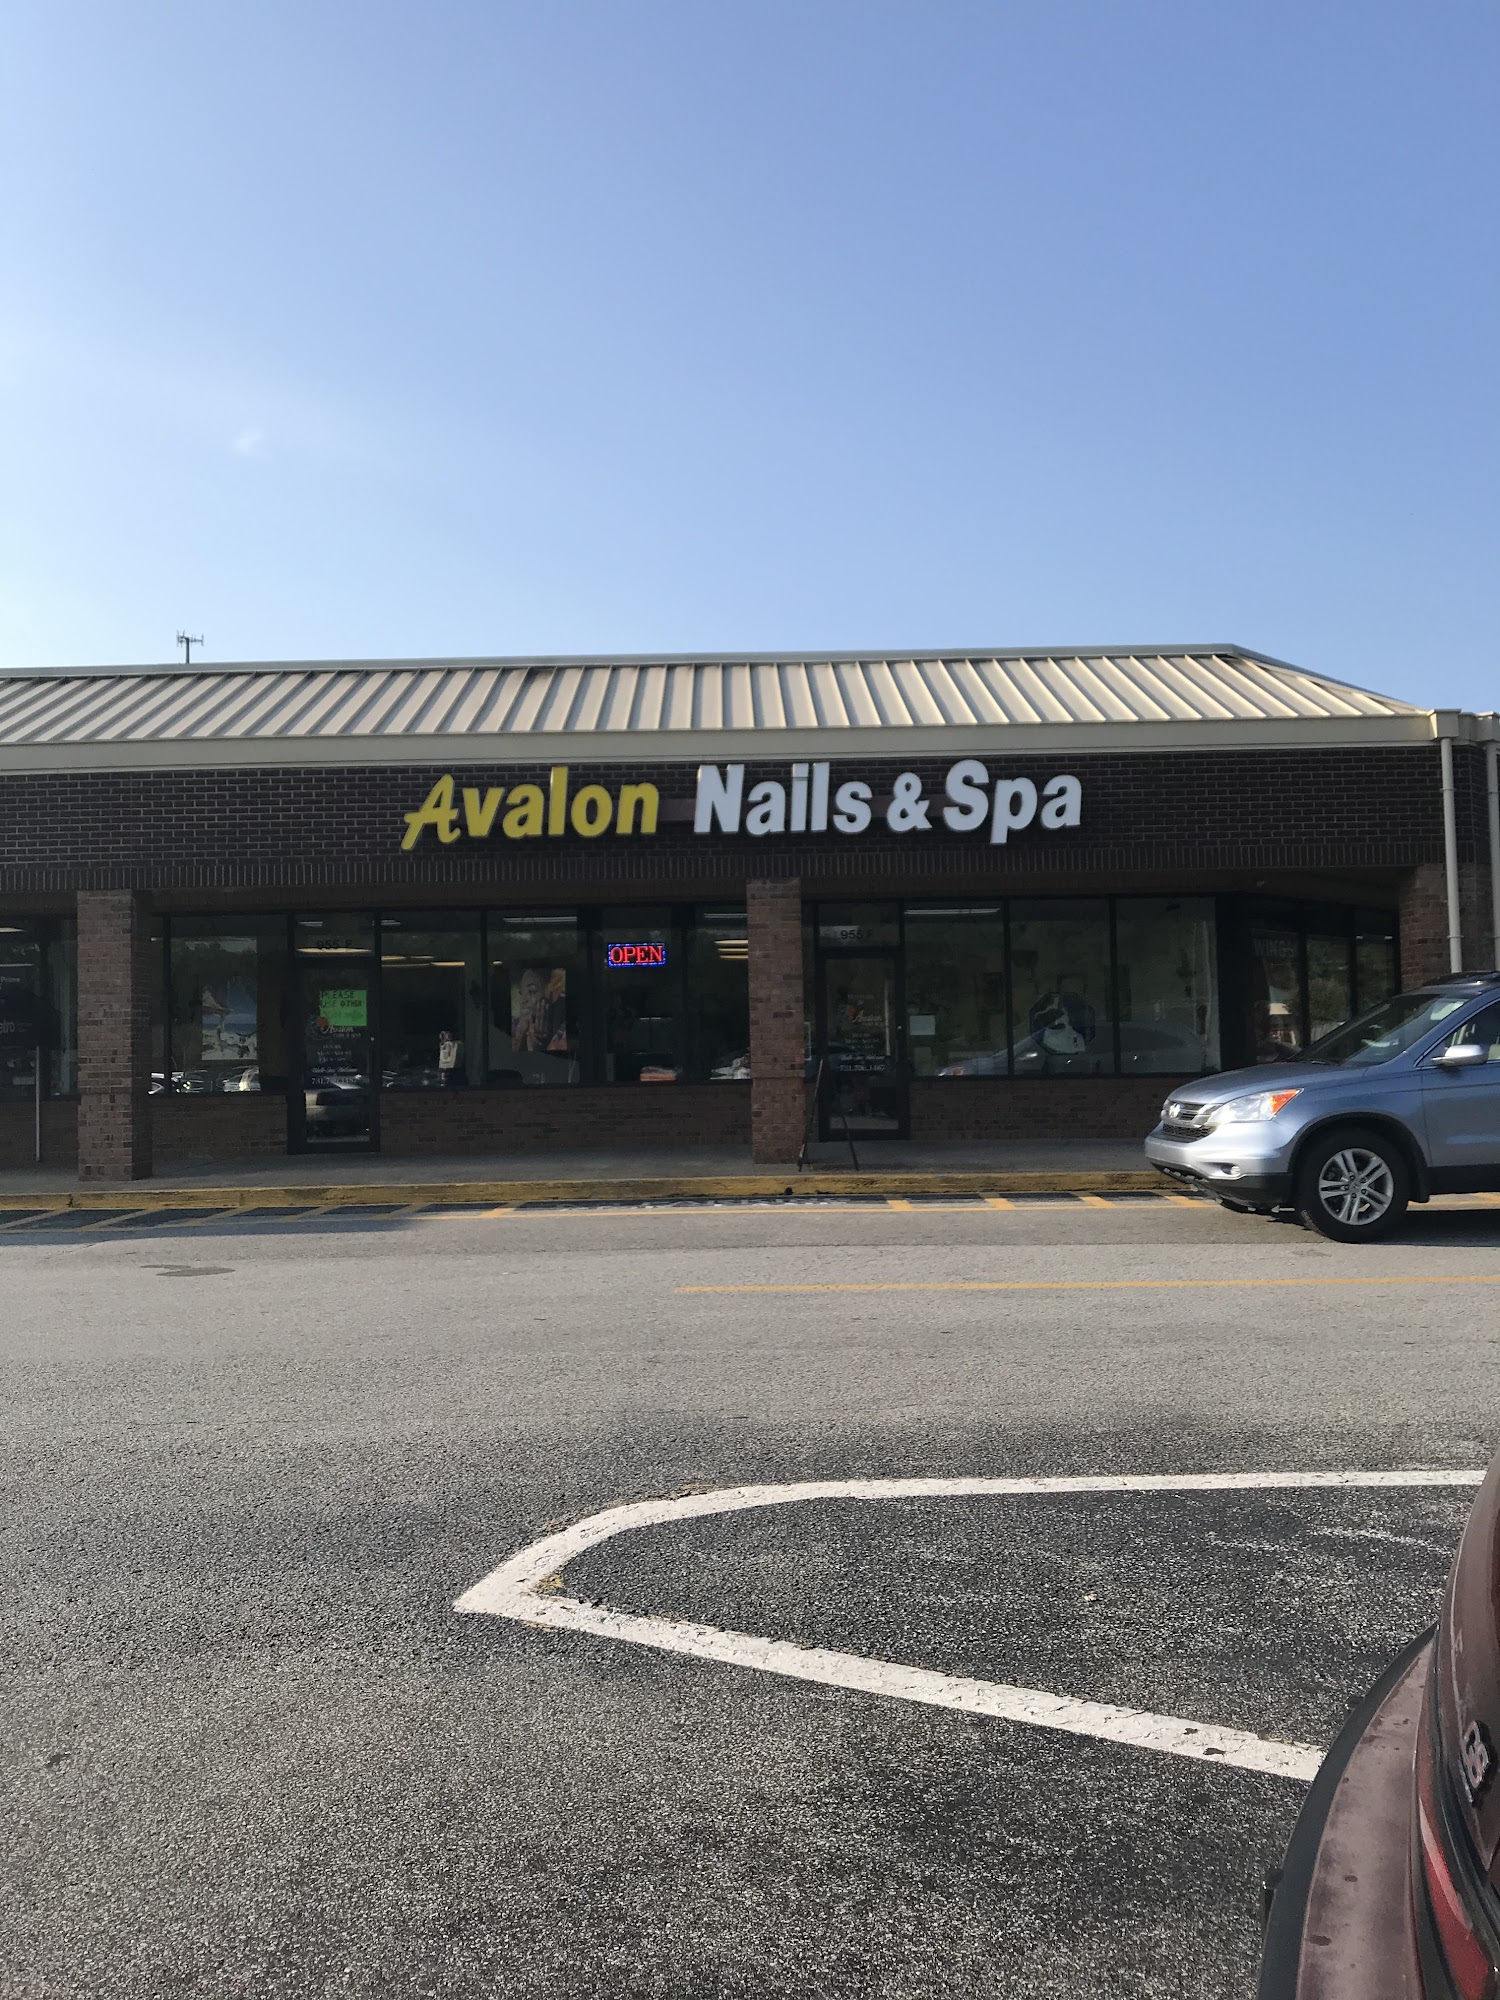 Avalon Nails & Spa